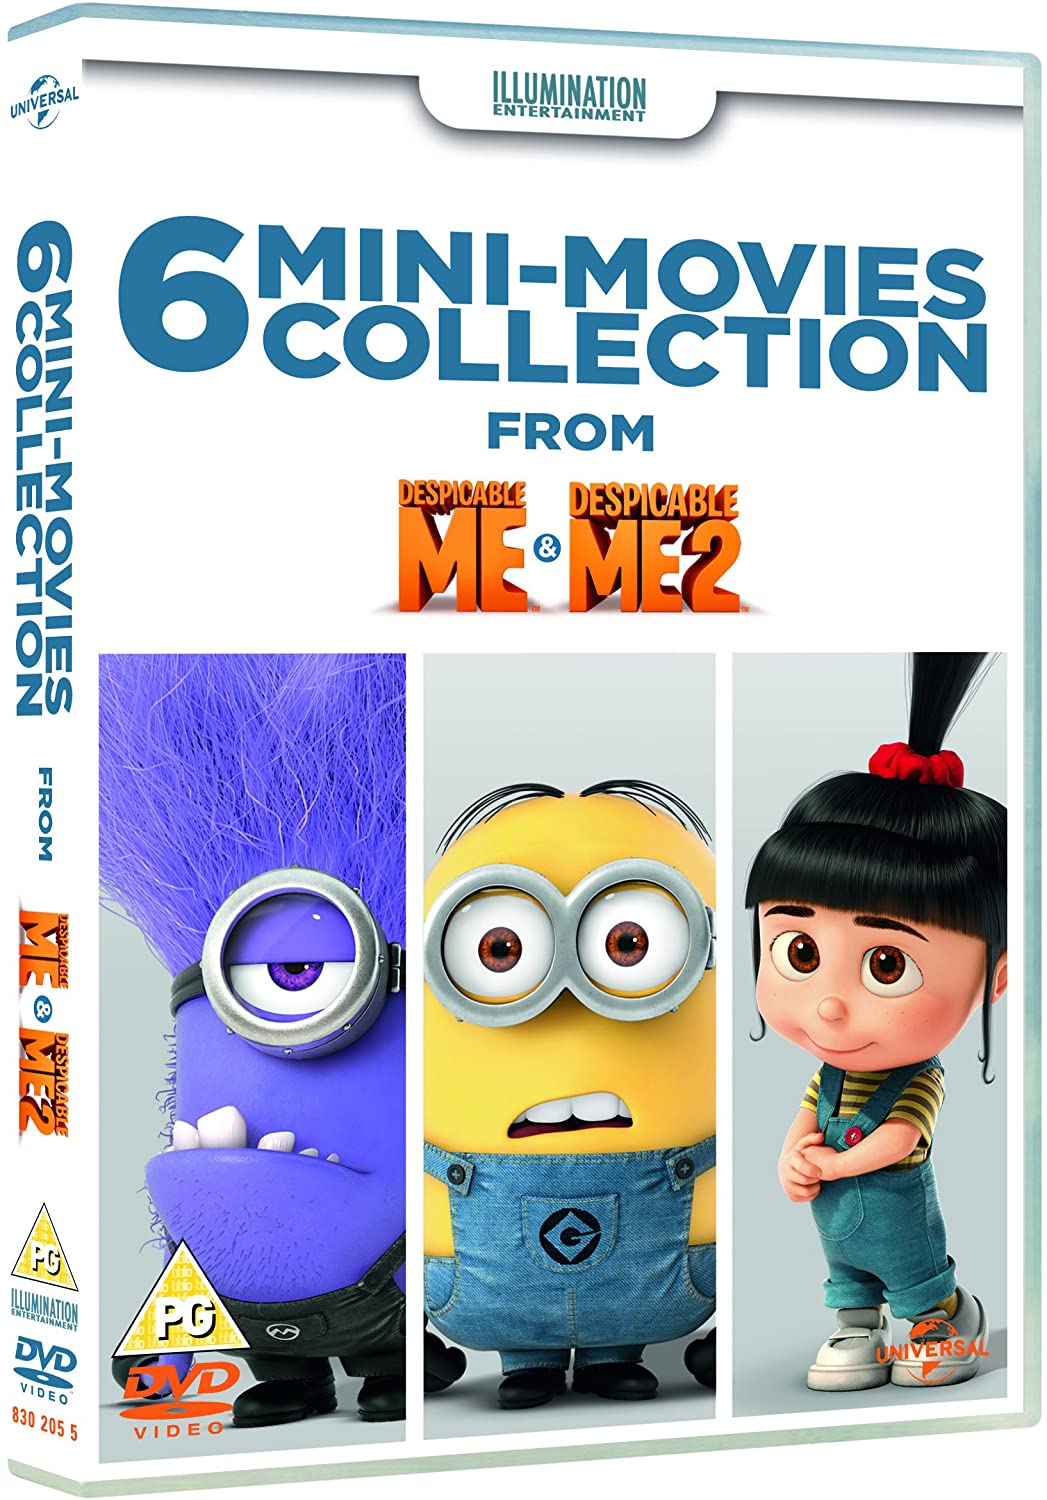 Illumination Mini-Movies Collection (Illumination) (DVD)